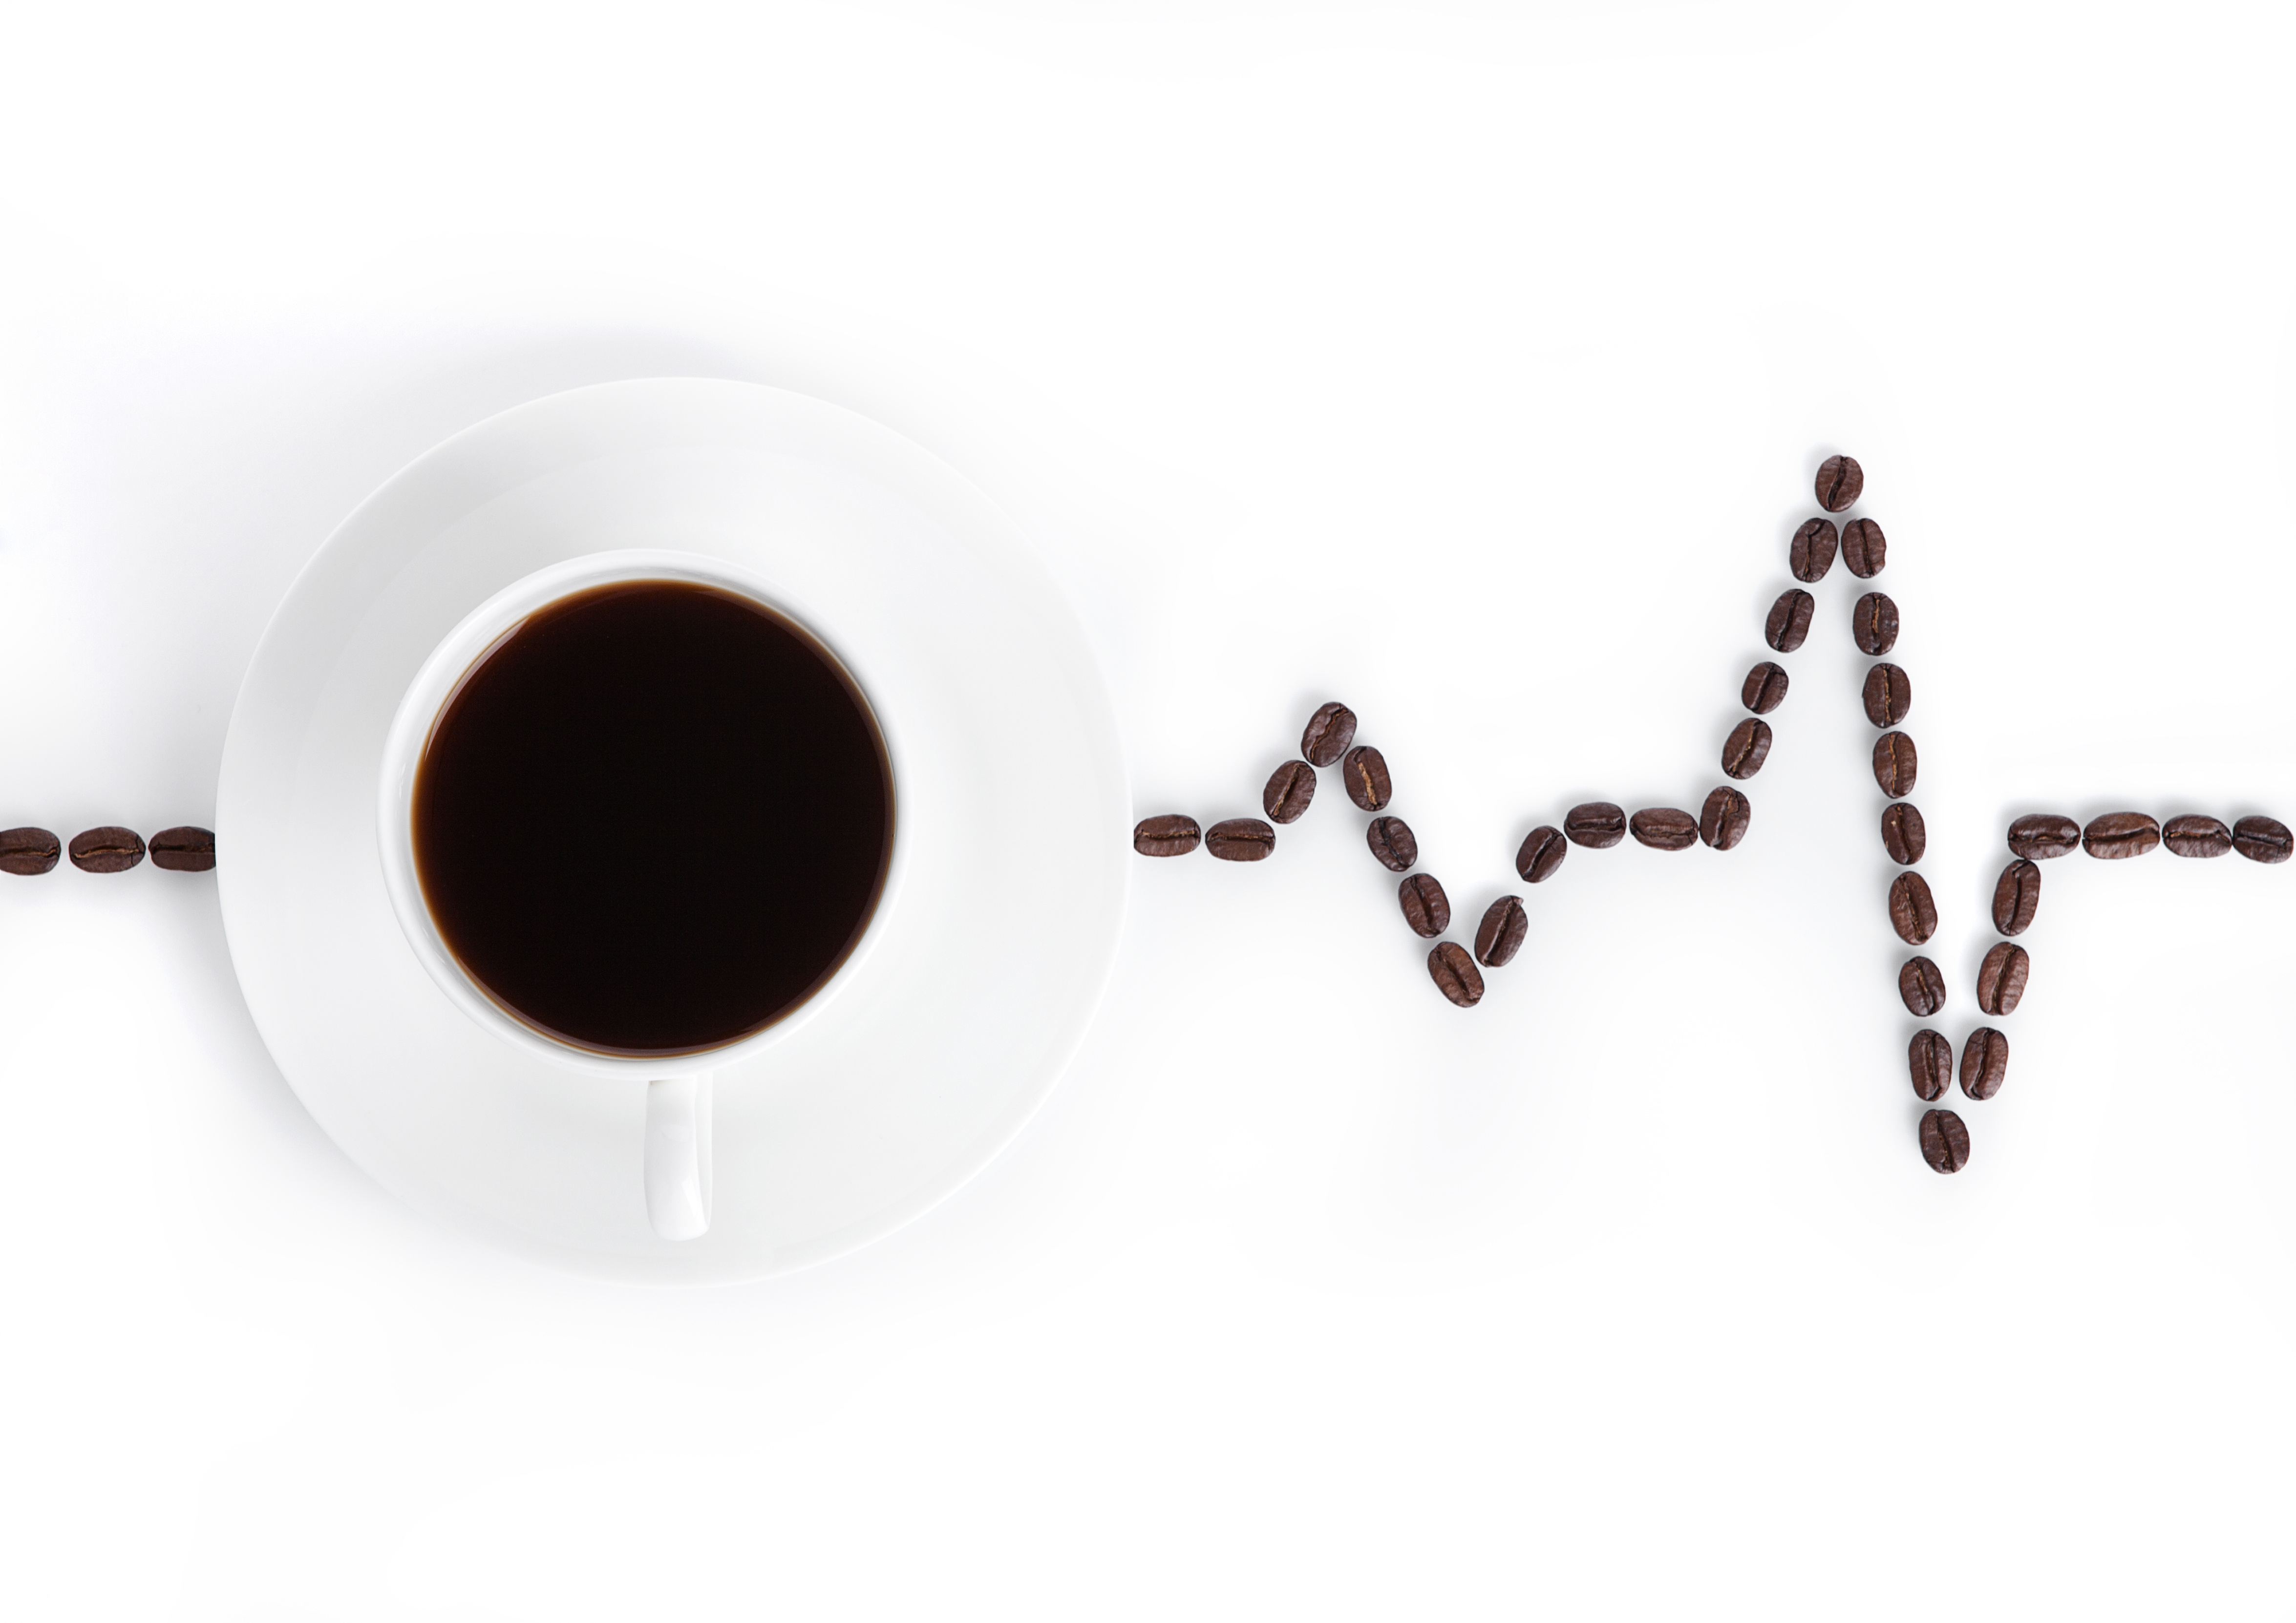 Le type de café que nous aimons et avons envie de consommer pourrait nous en dire plus sur notre santé cardiovasculaire (Visuel Adobe Stock 129374726)